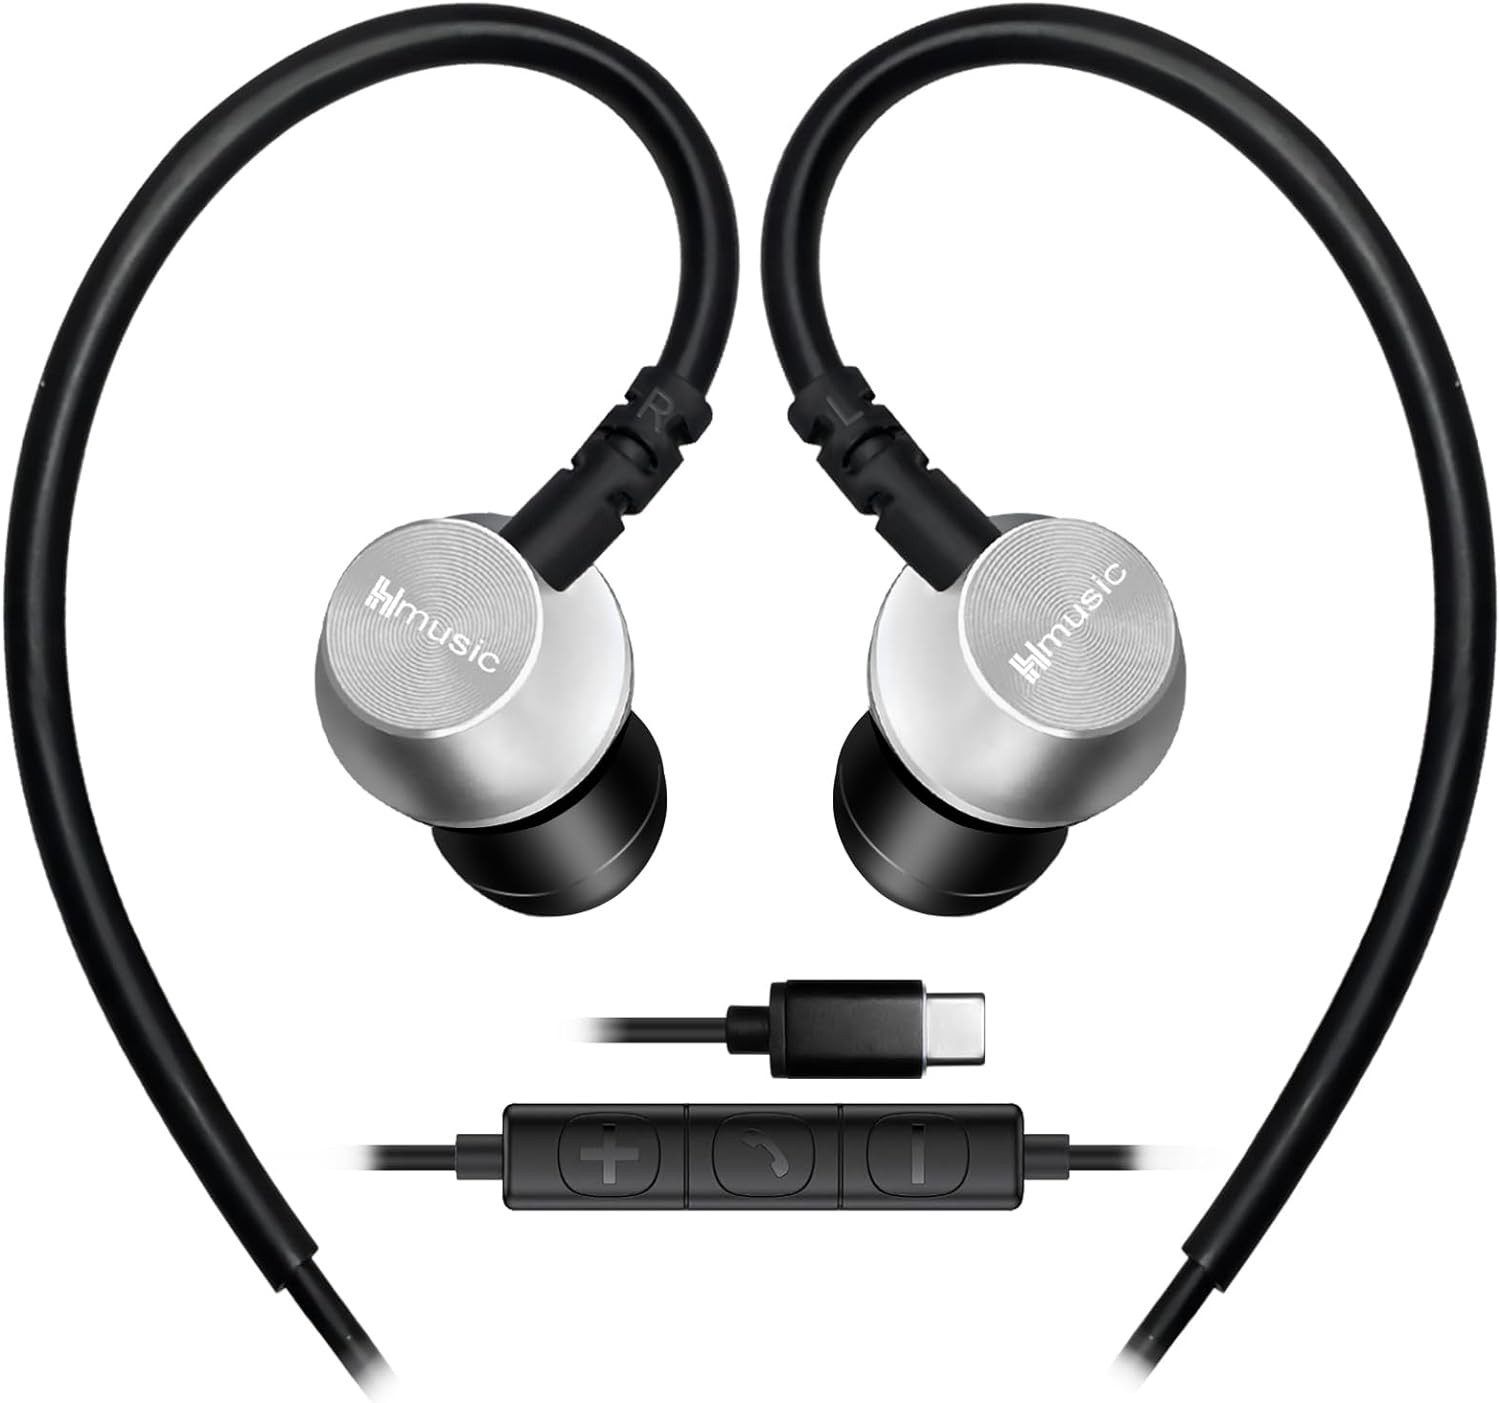 Hmusic Mikrofon sorgt für kristallklare Telefonate, In-Ear-Kopfhörer (Praktische Inline-Steuerung: Der Controller ermöglicht einfache Bedienung für Musikwiedergabe, Lautstärkeregelung und Anrufannahme., Kabelgebundene Sportkopfhörer mit USB C Stecker, ultraleichtem Design)